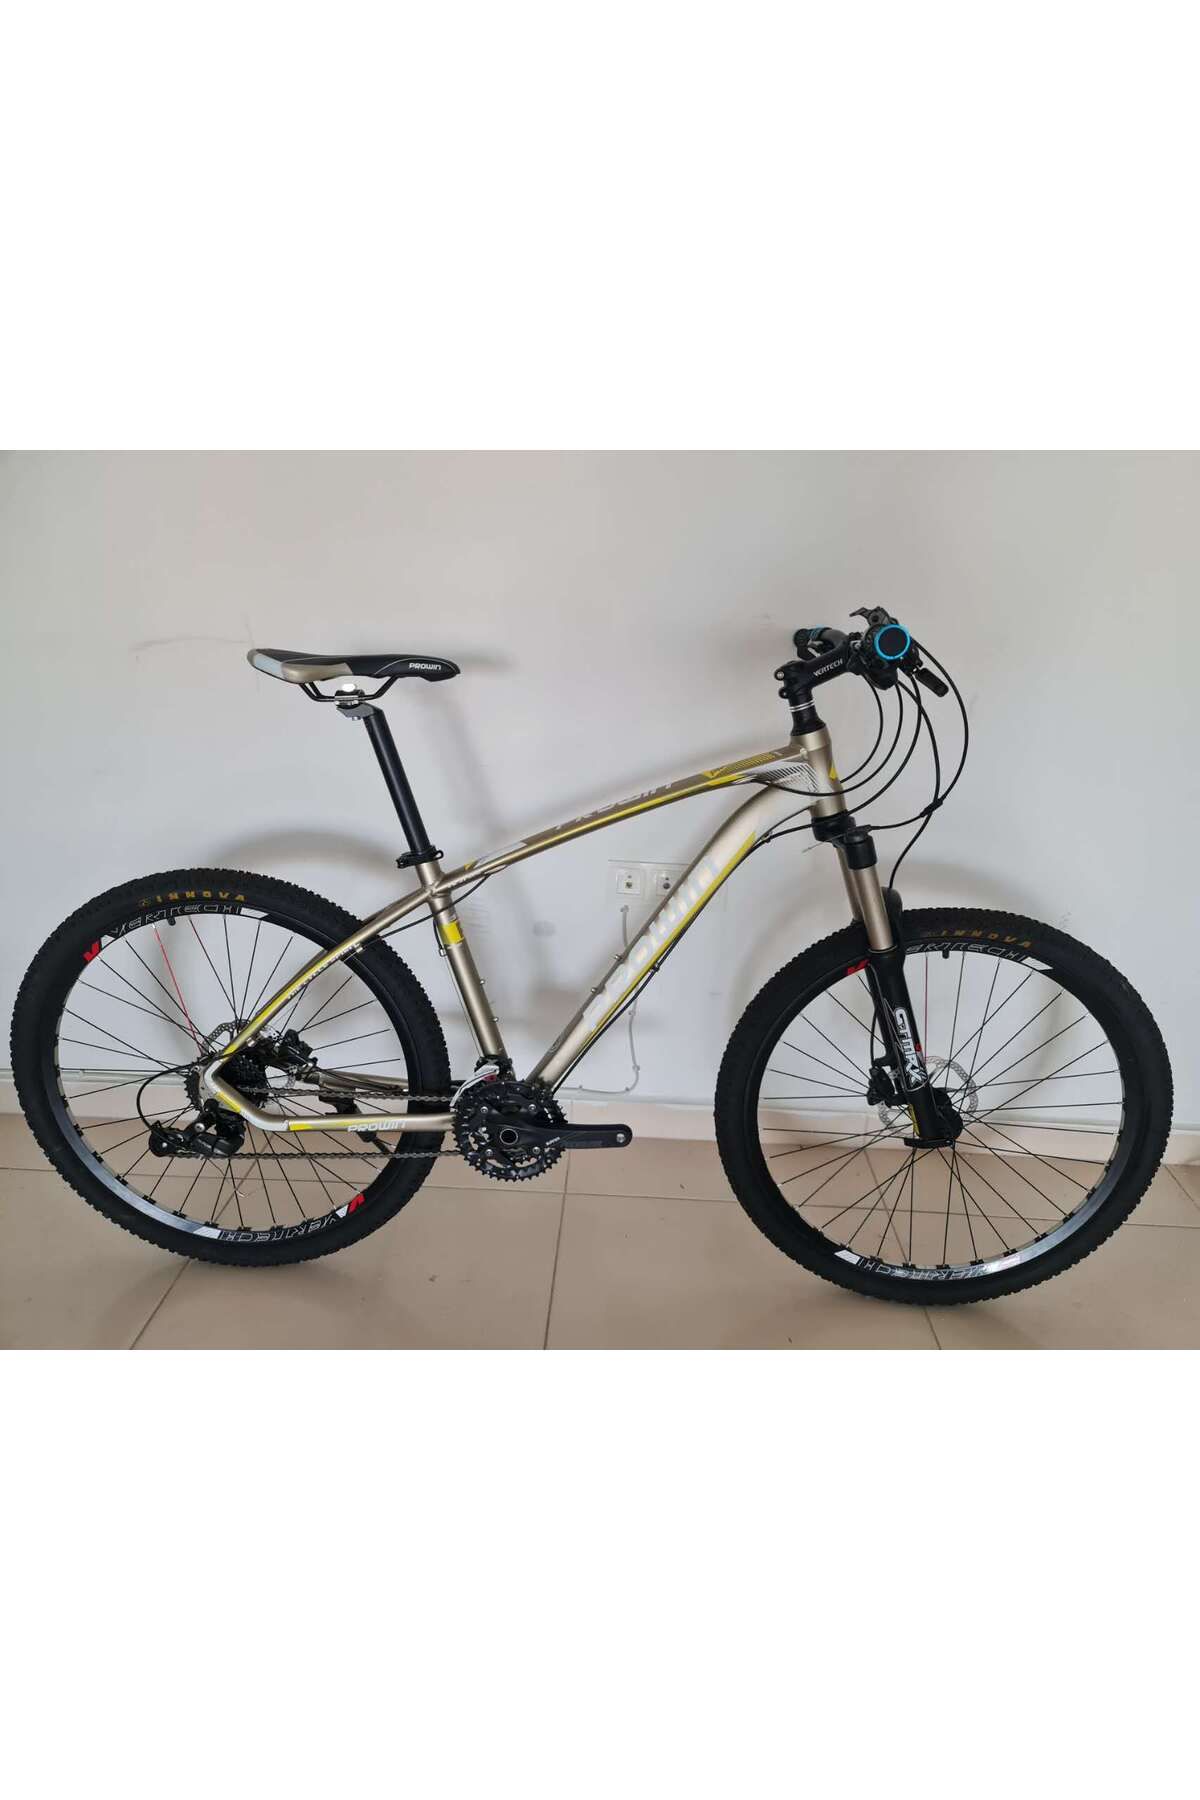 Vertech bisiklet PR575HD 27S